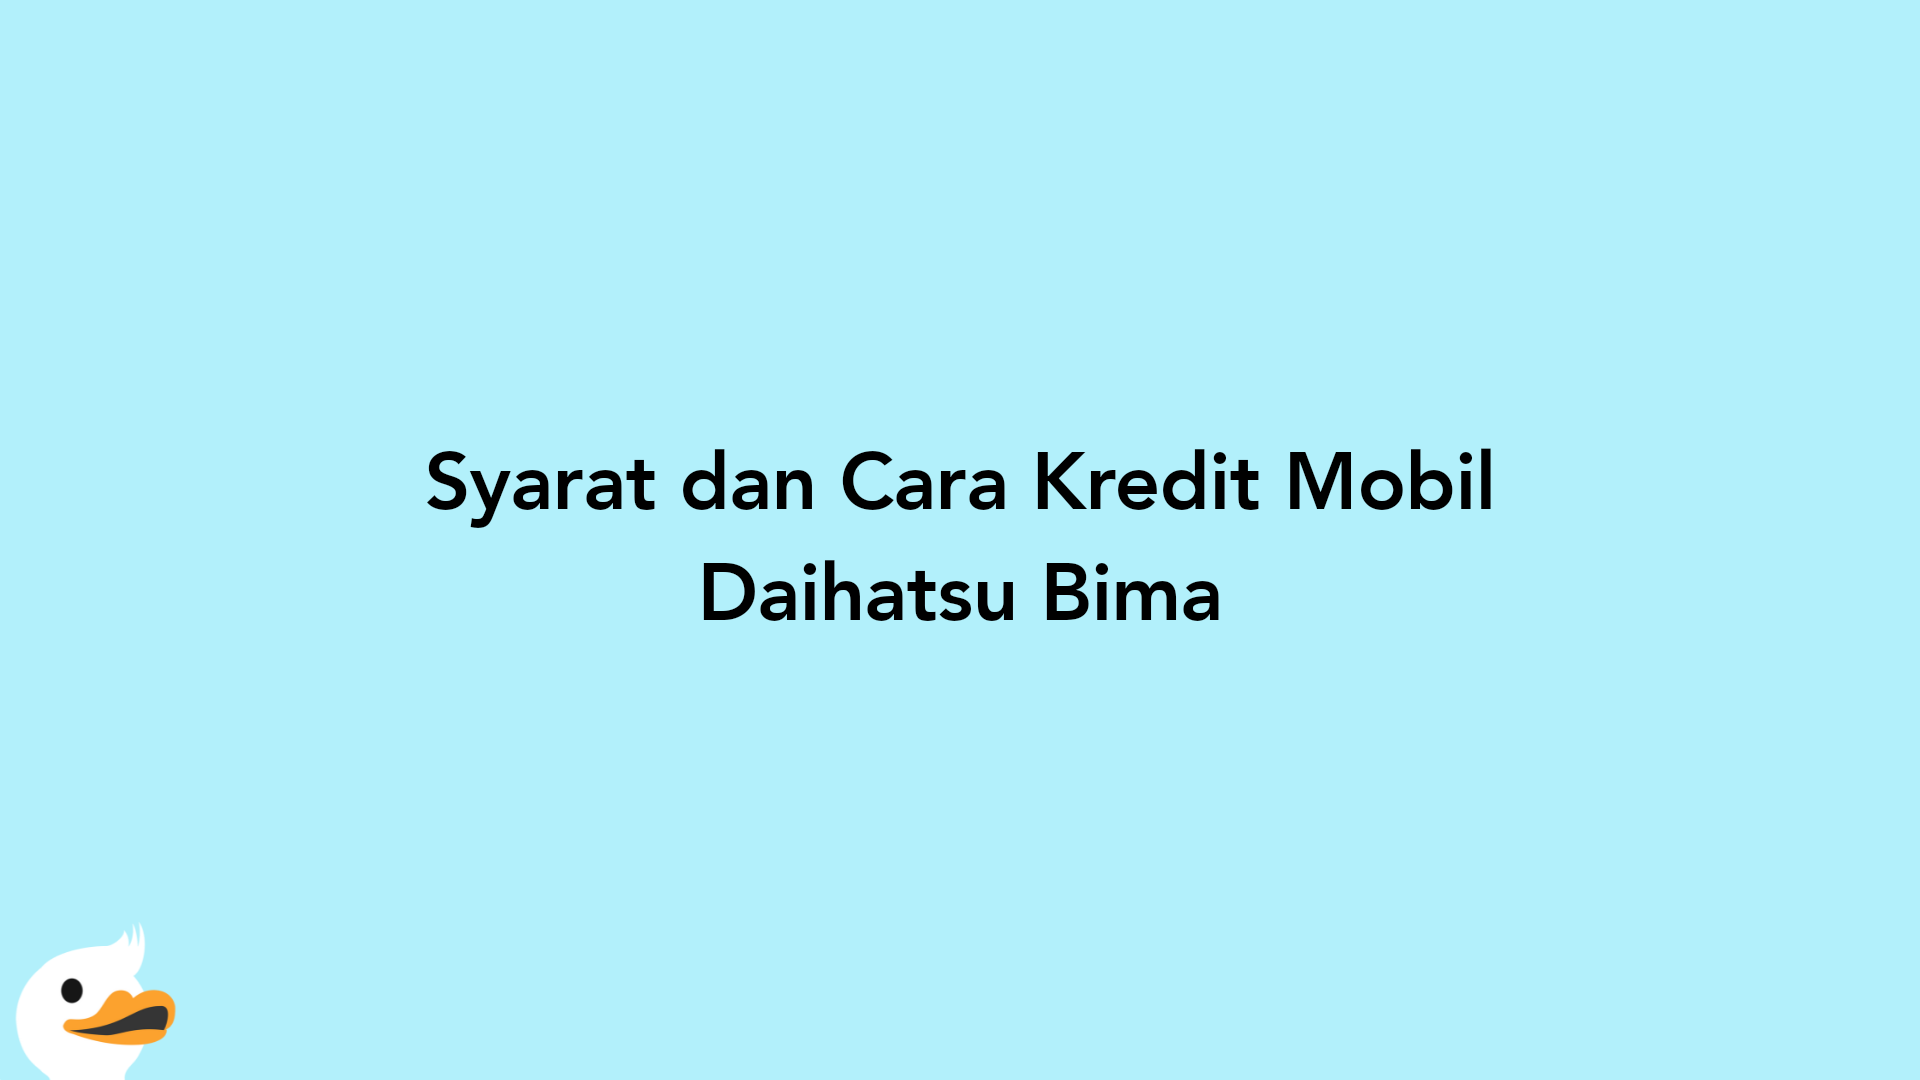 Syarat dan Cara Kredit Mobil Daihatsu Bima